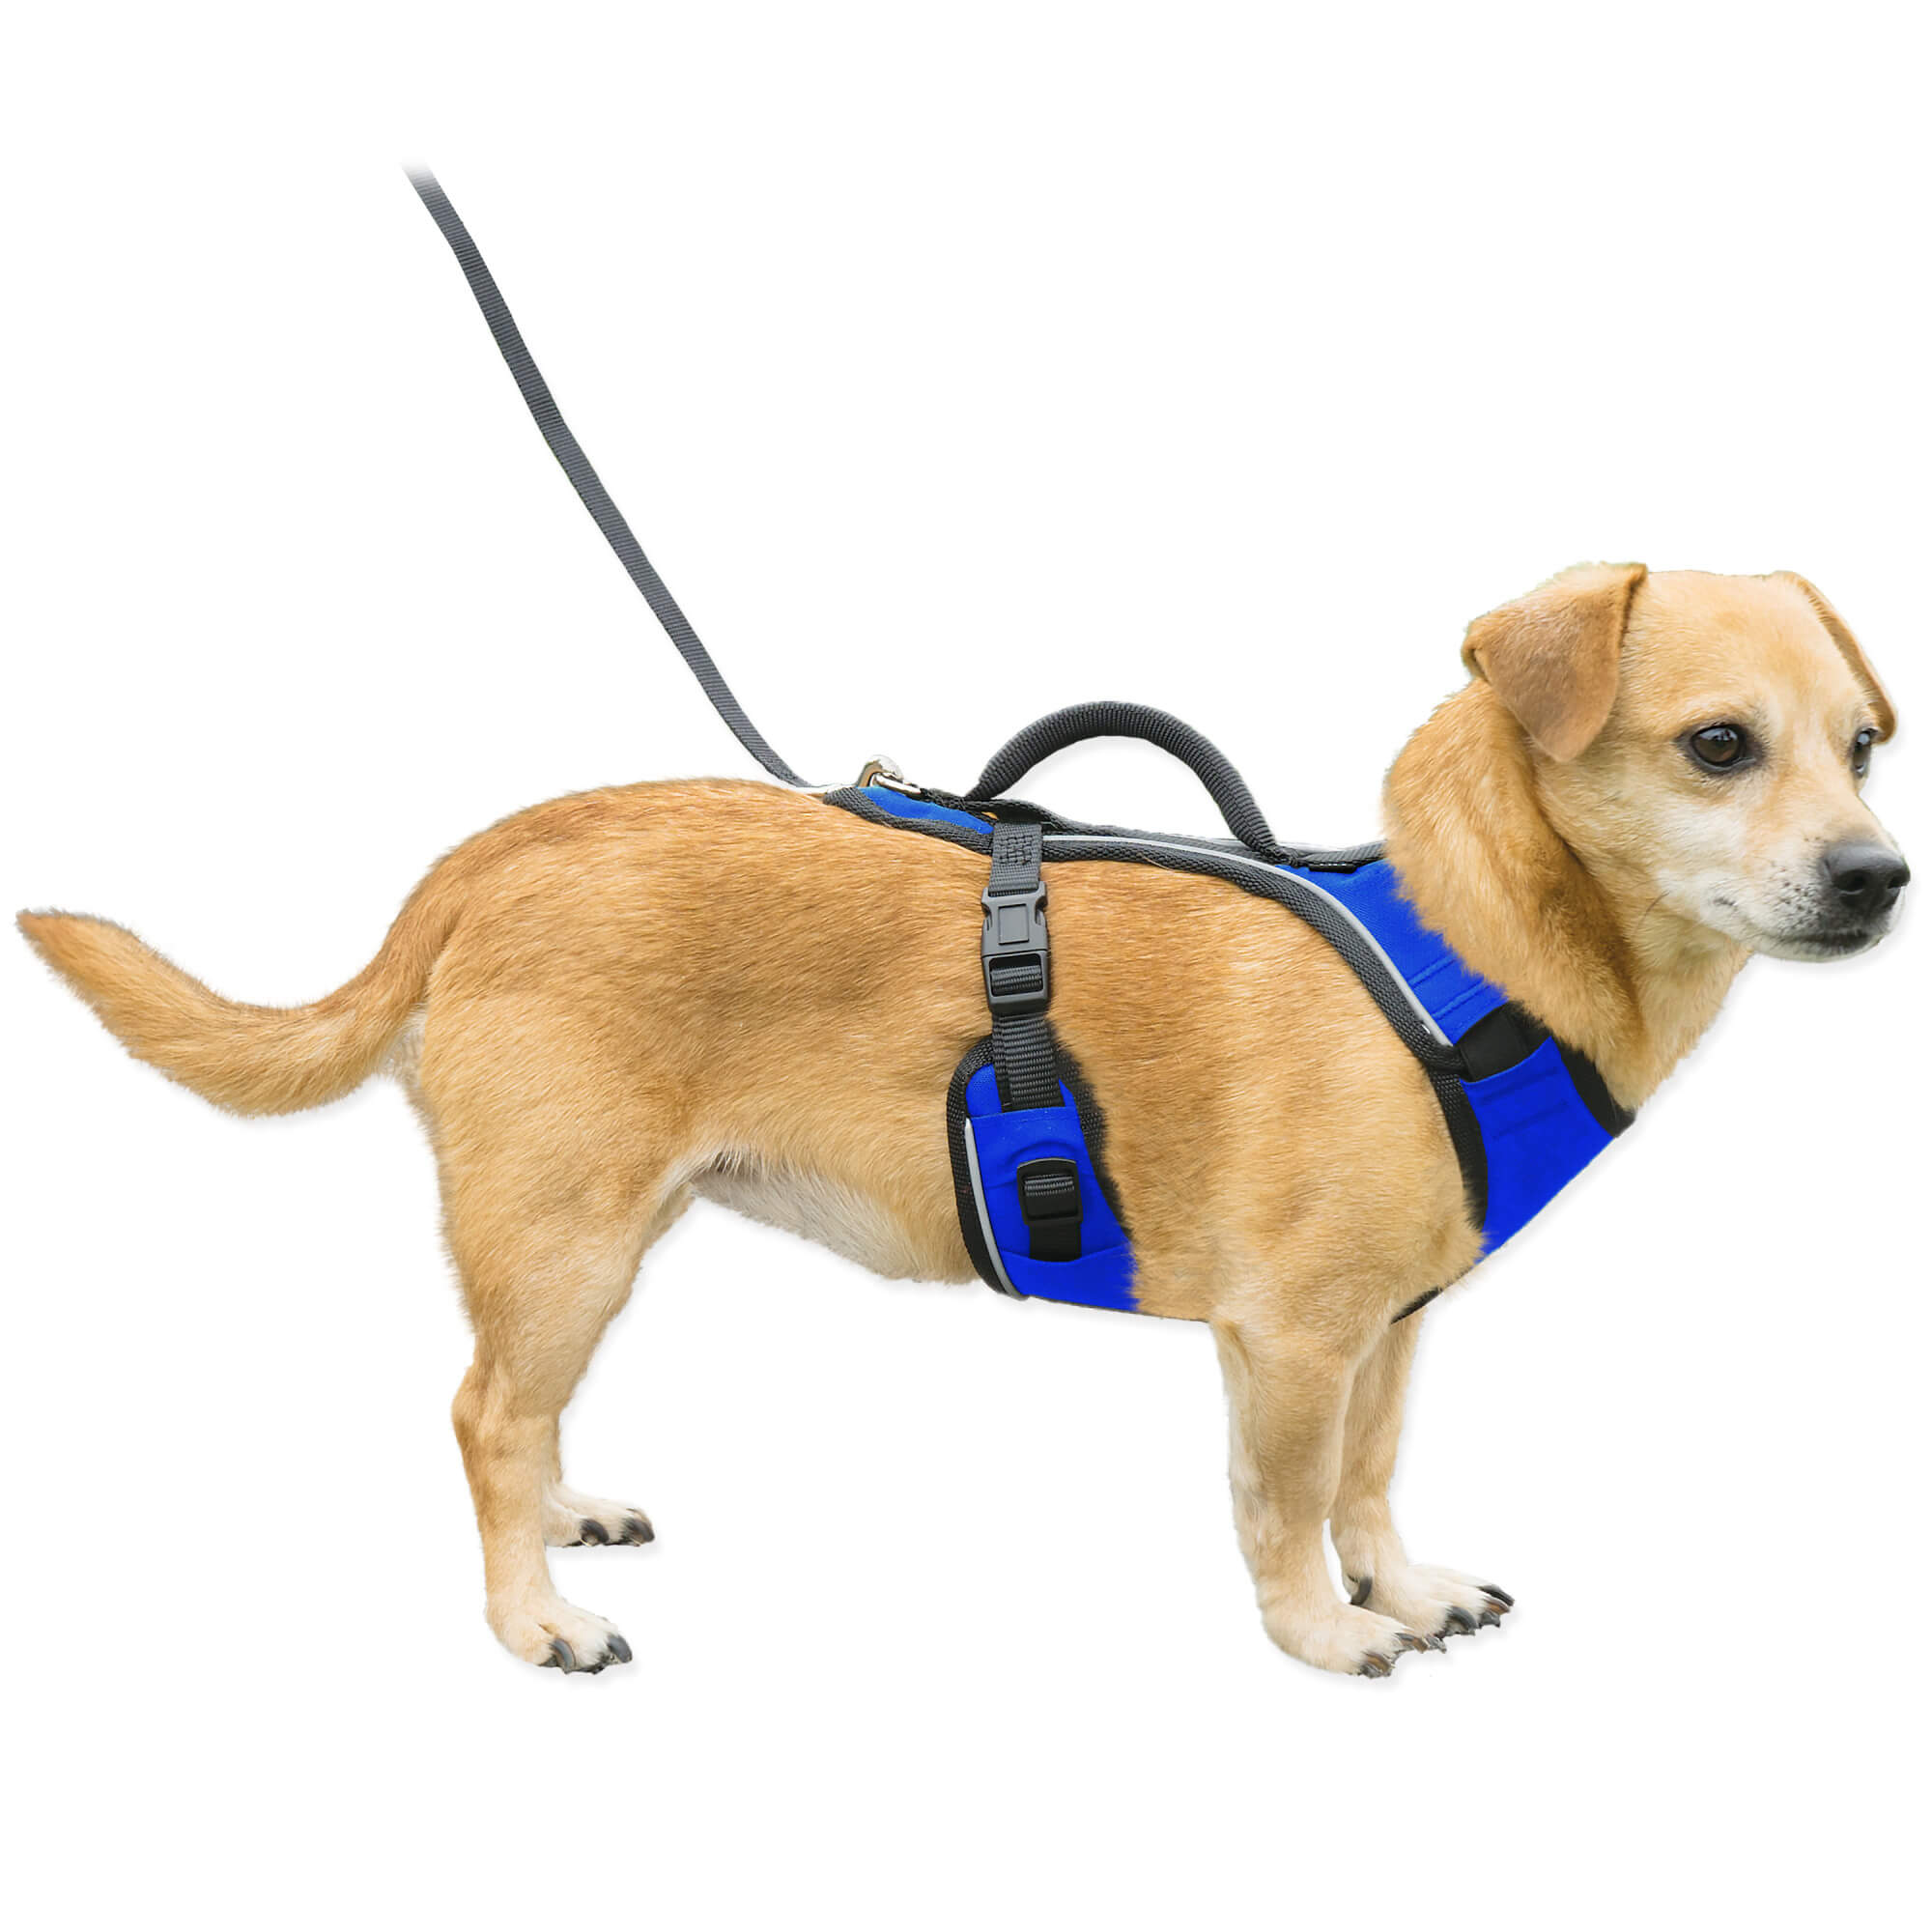 Dog wearing blue petsafe easysport harness in xsmall